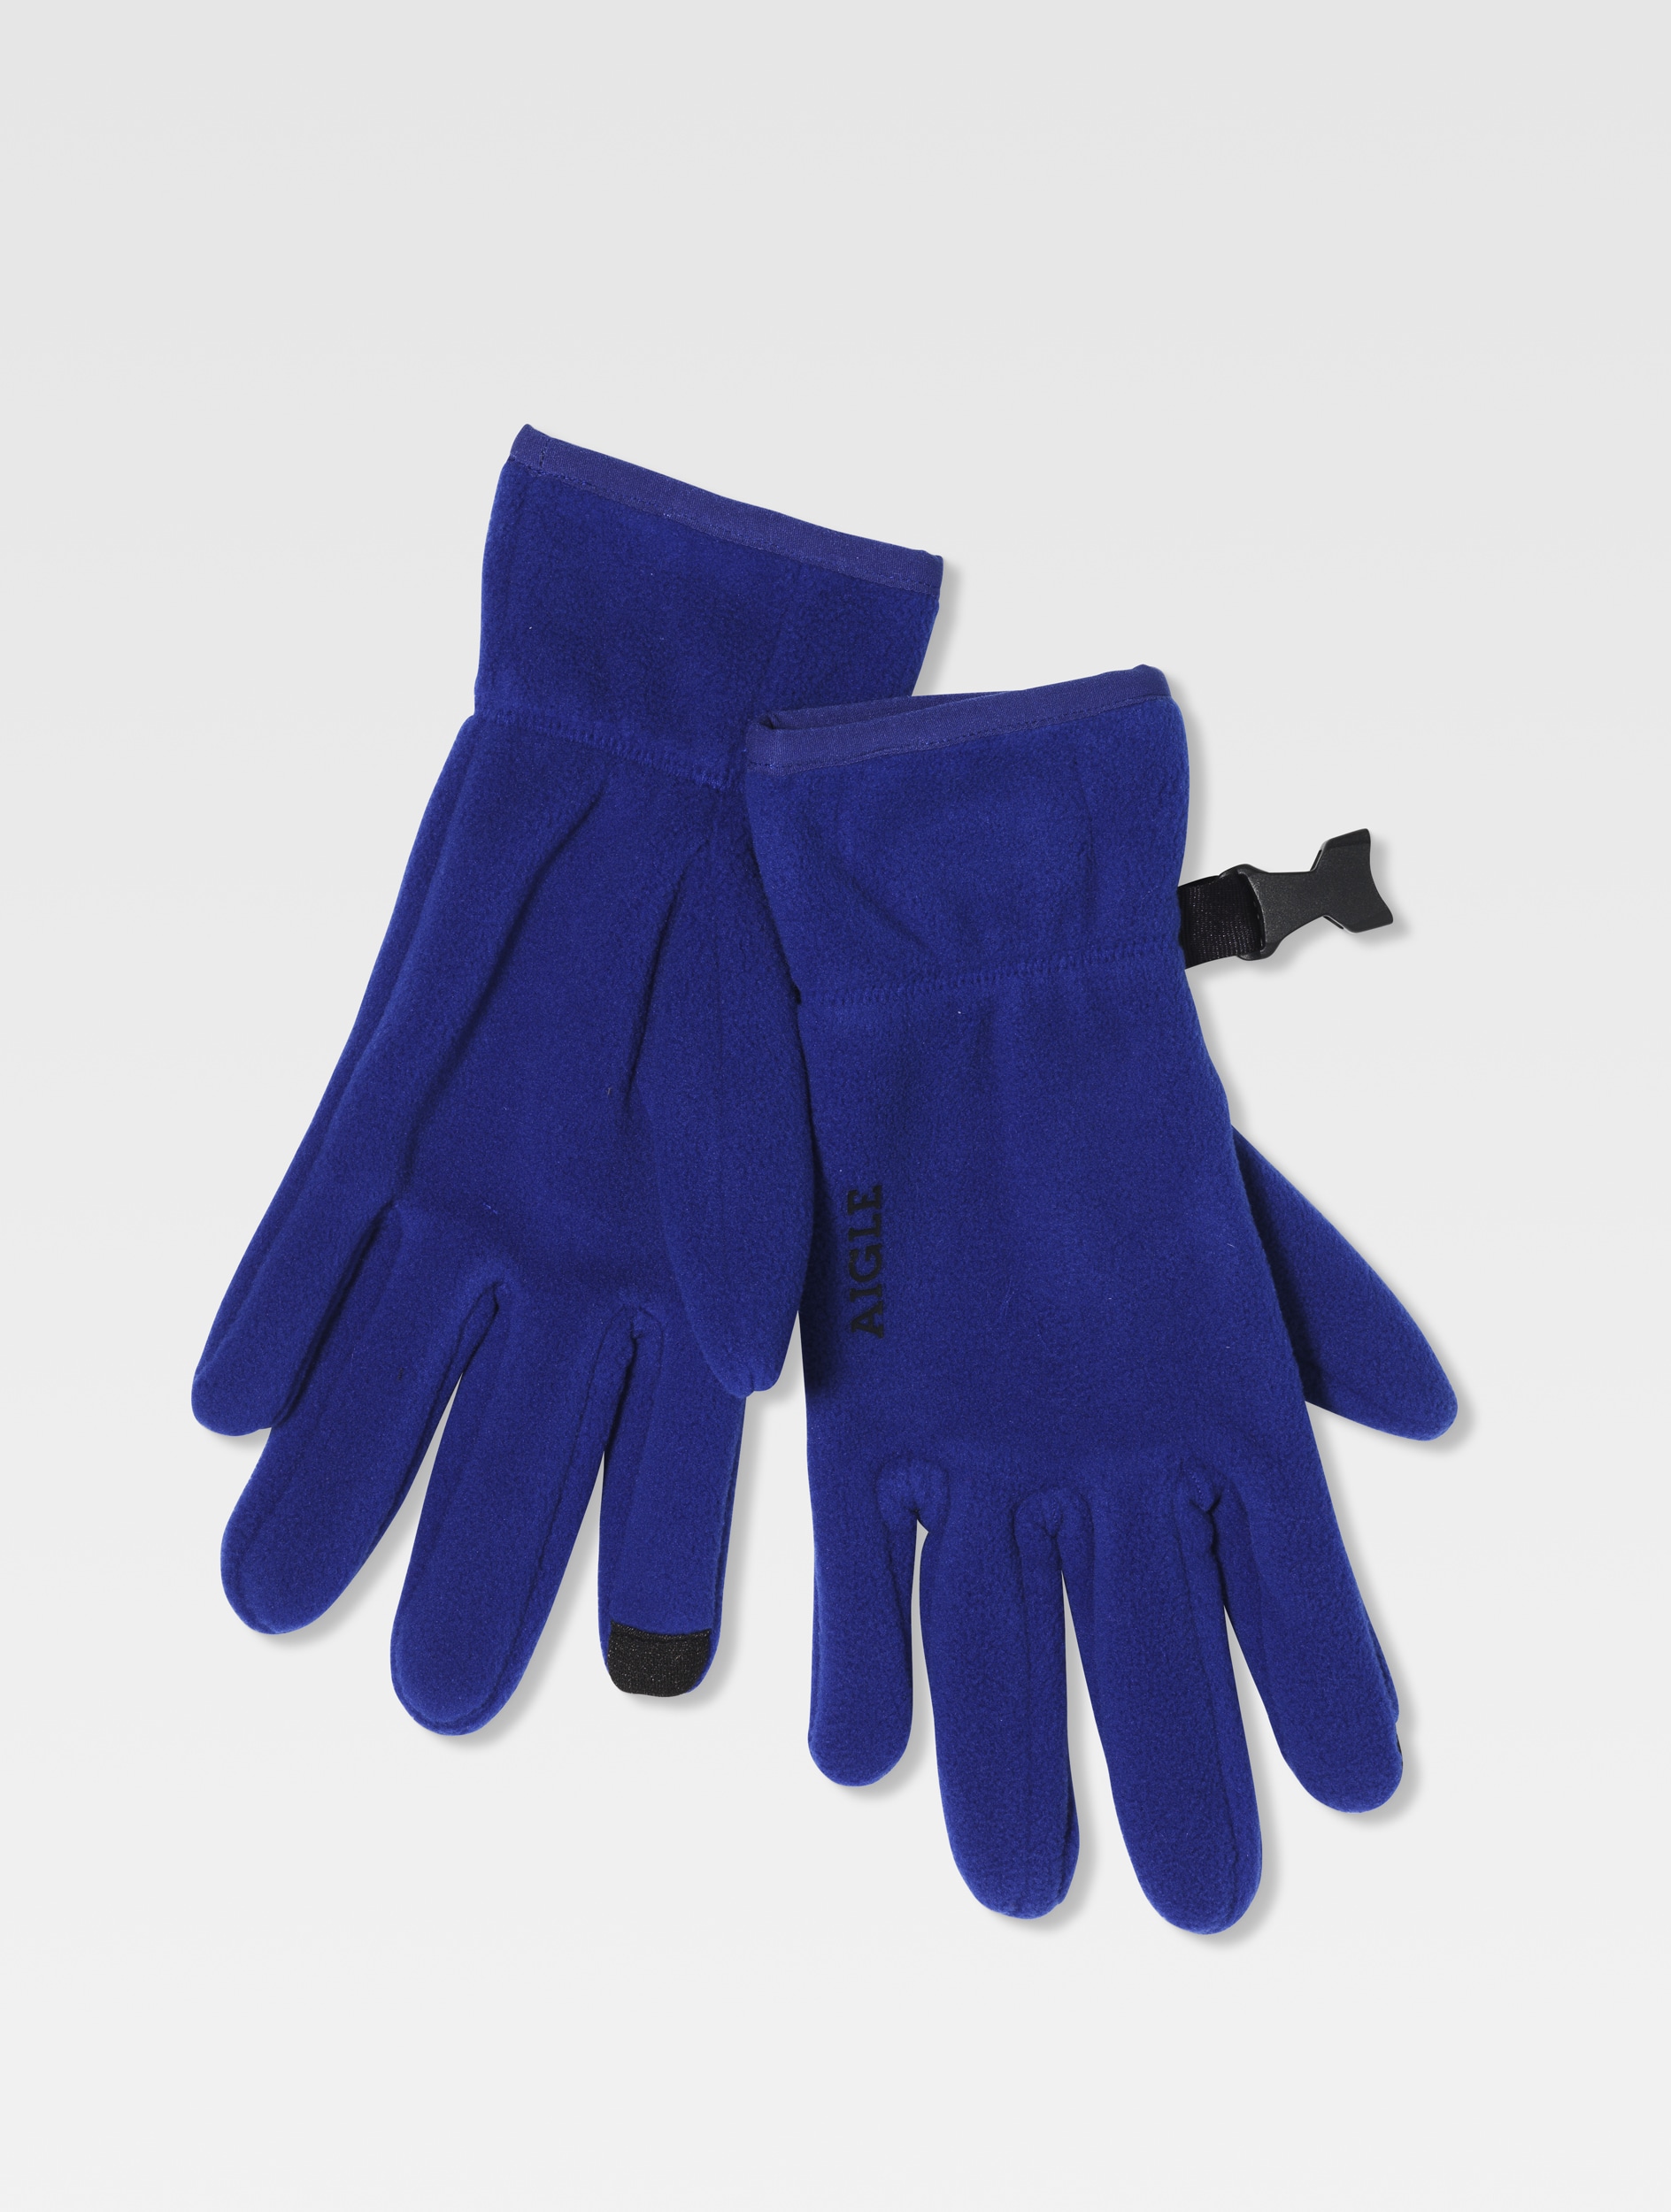 Aigle The technical Polartec glove Cobalt - Acamaw | AIGLE